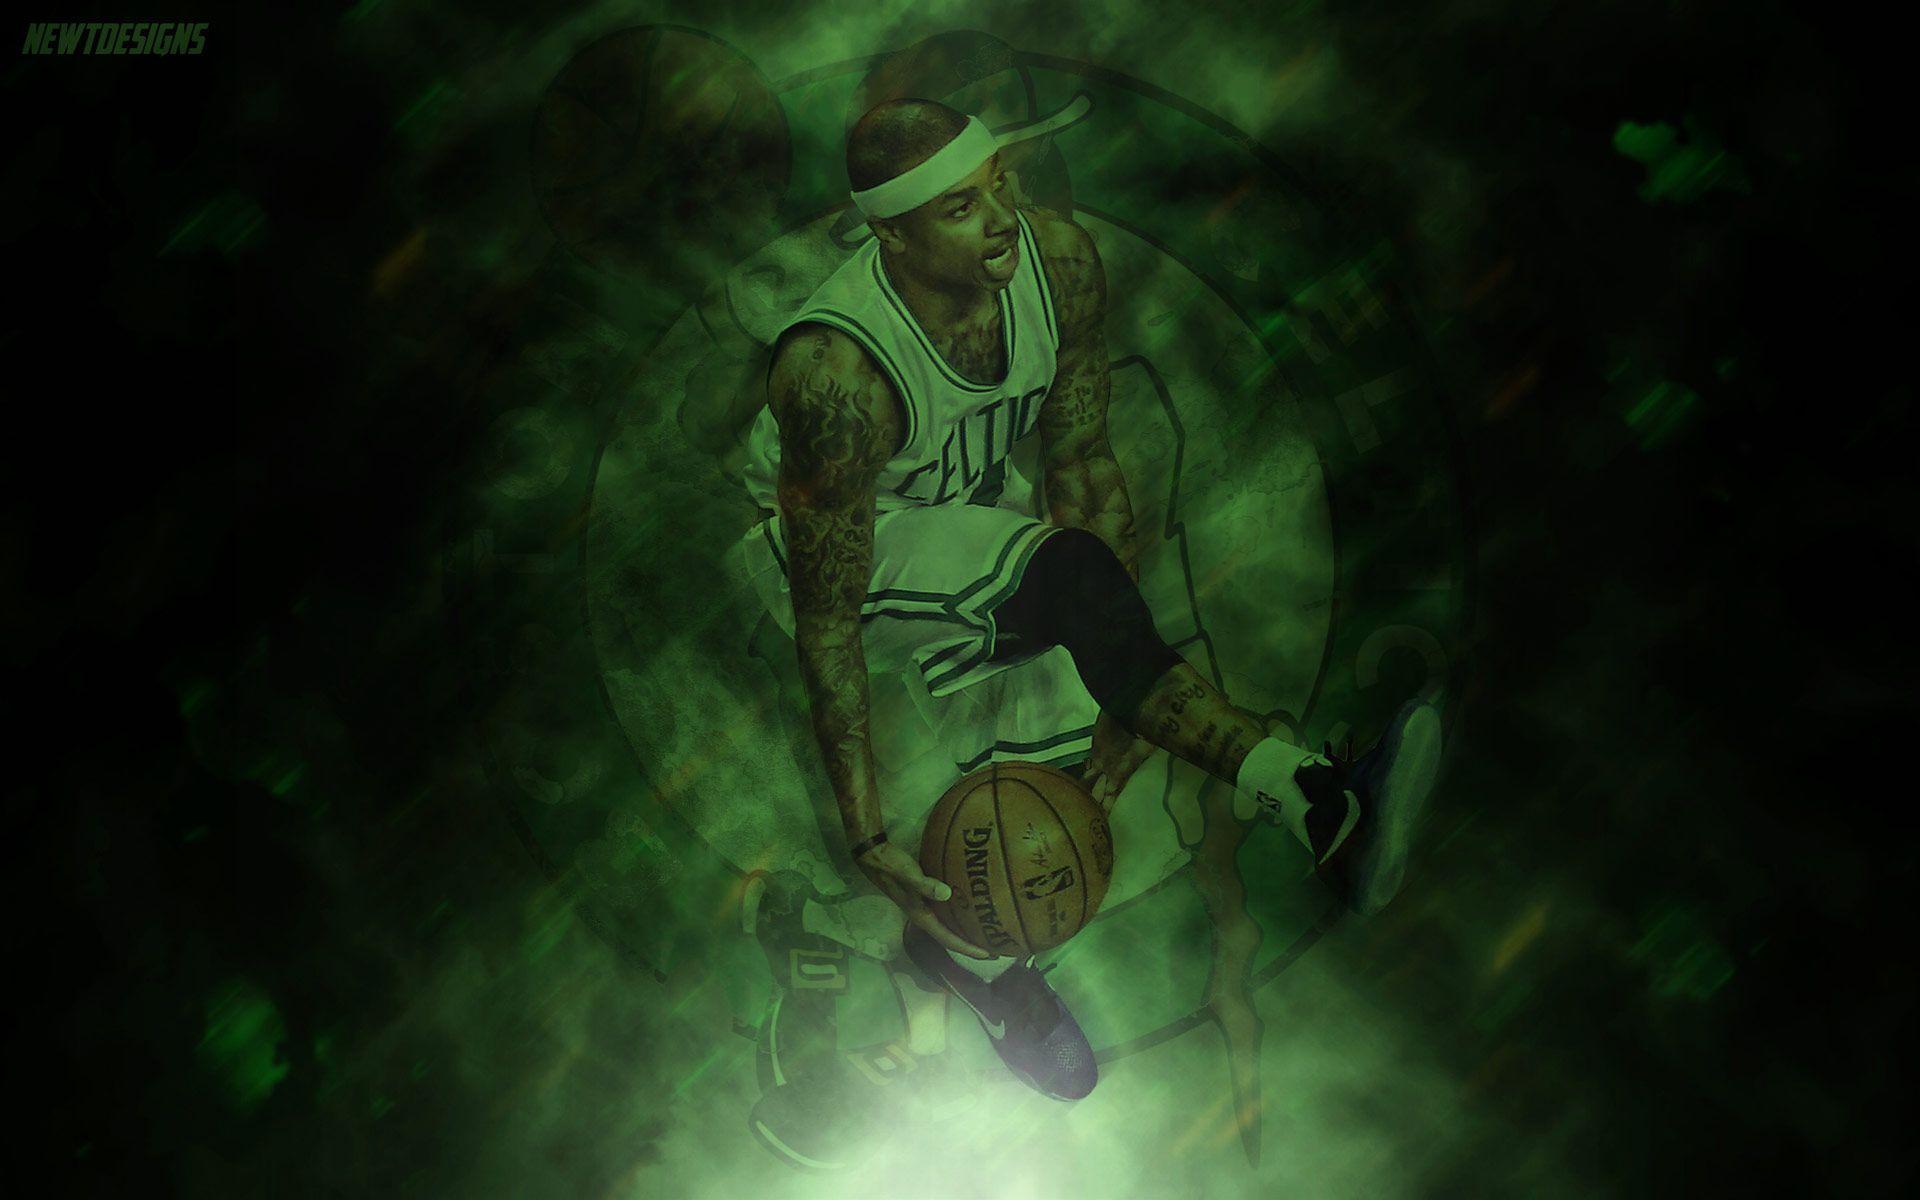 Boston Celtics Wallpaper. Basketball Wallpaper at